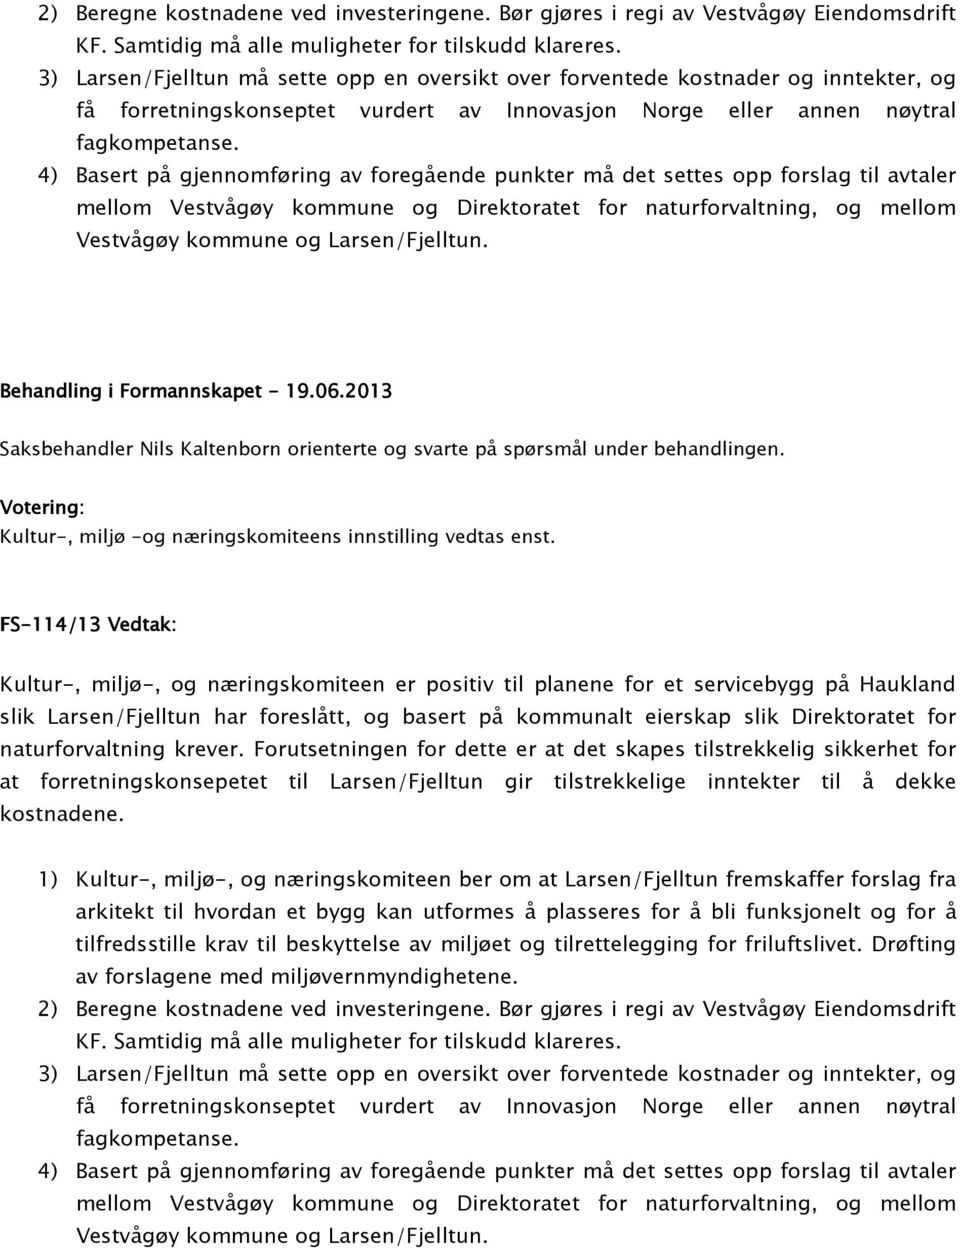 4) Basert på gjennomføring av foregående punkter må det settes opp forslag til avtaler mellom Vestvågøy kommune og Direktoratet for naturforvaltning, og mellom Vestvågøy kommune og Larsen/Fjelltun.